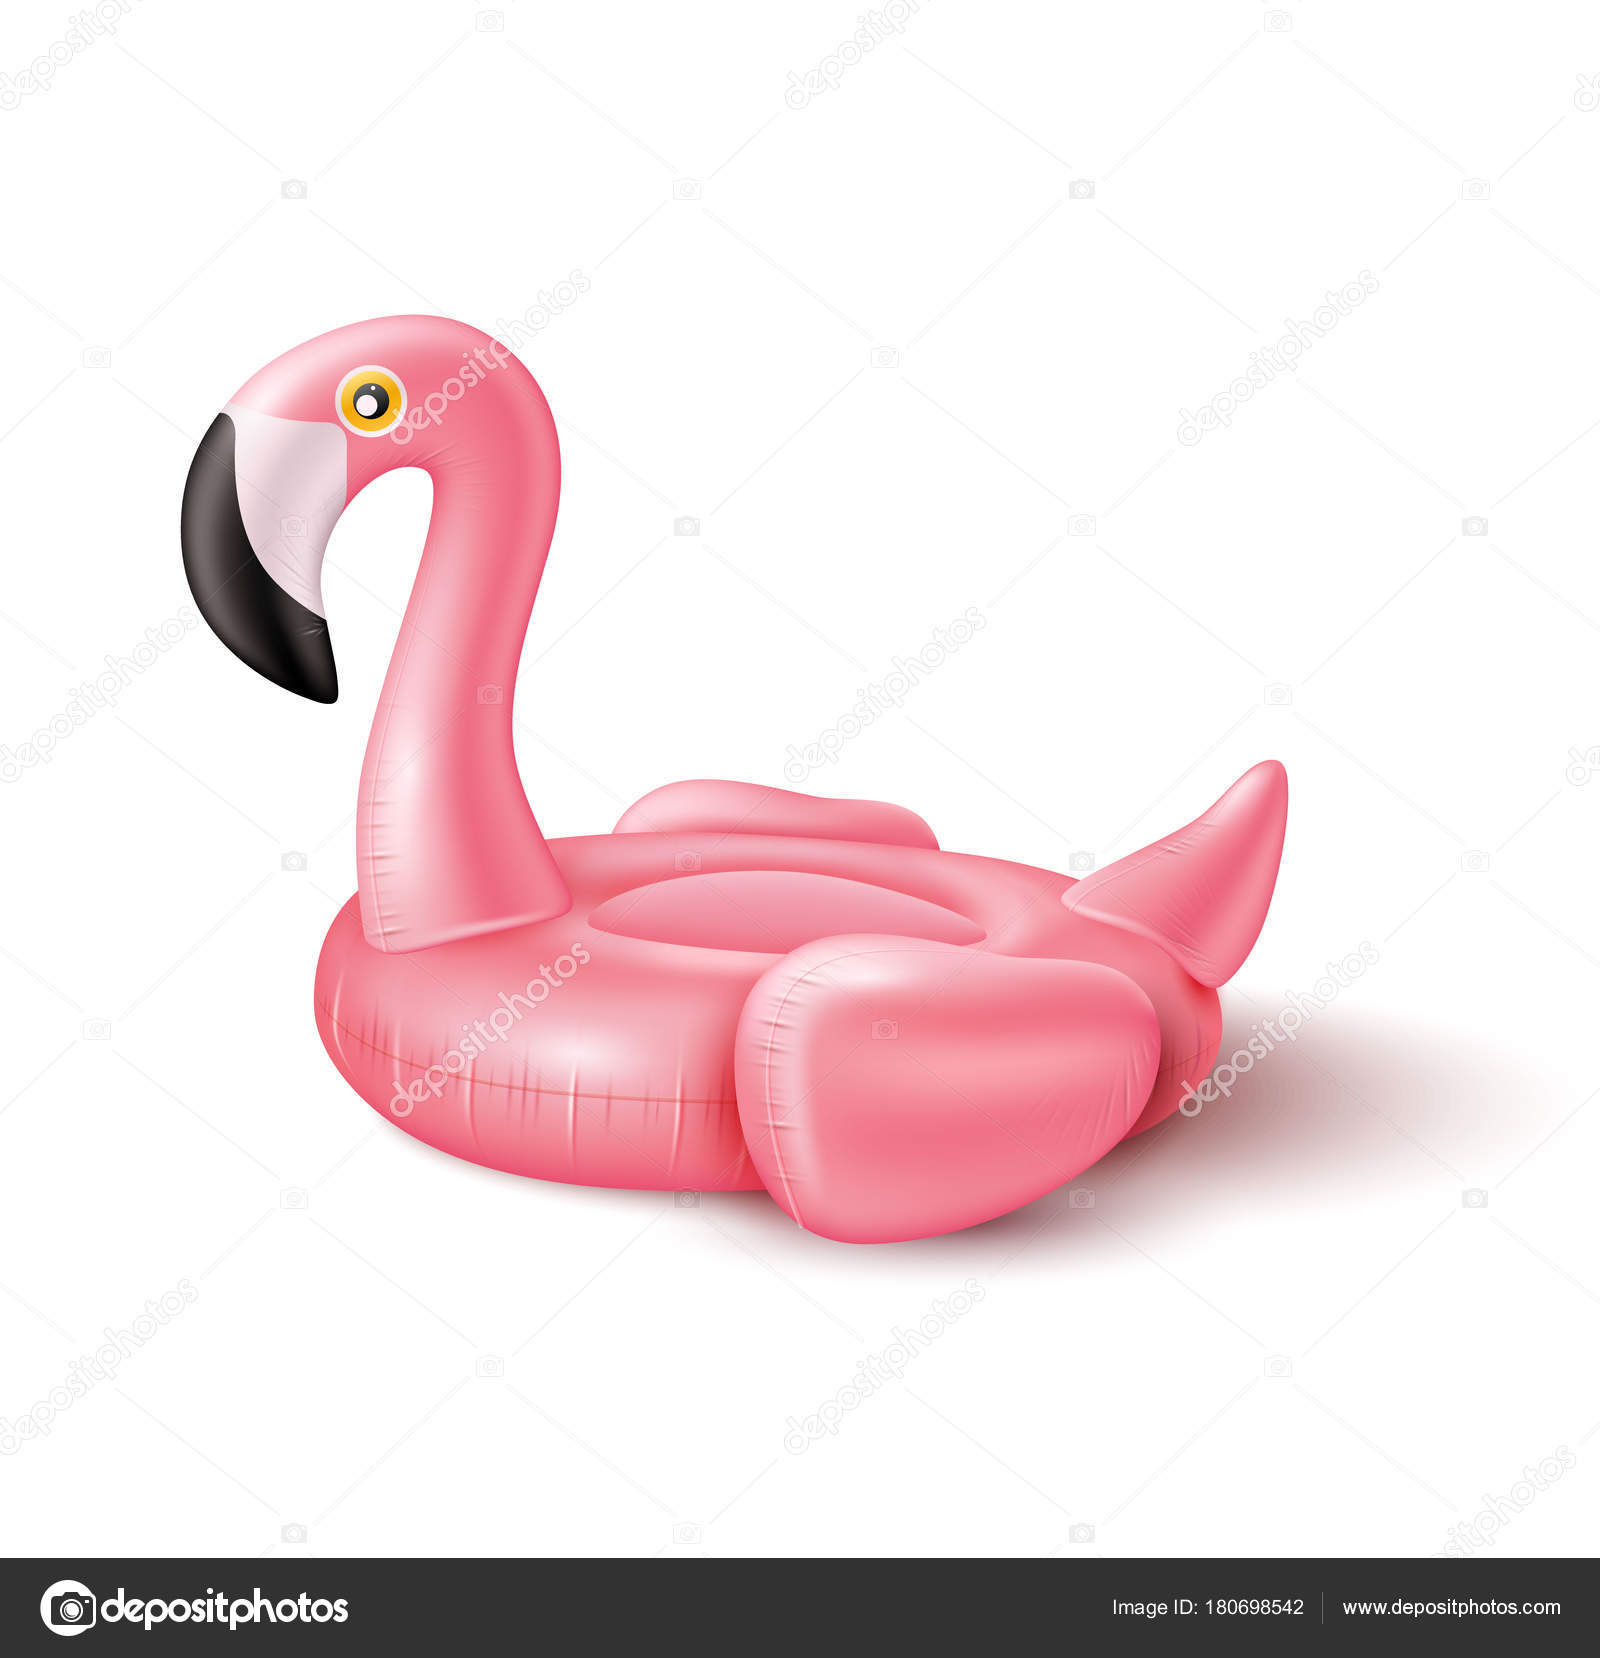 pink flamingo inflatable pool